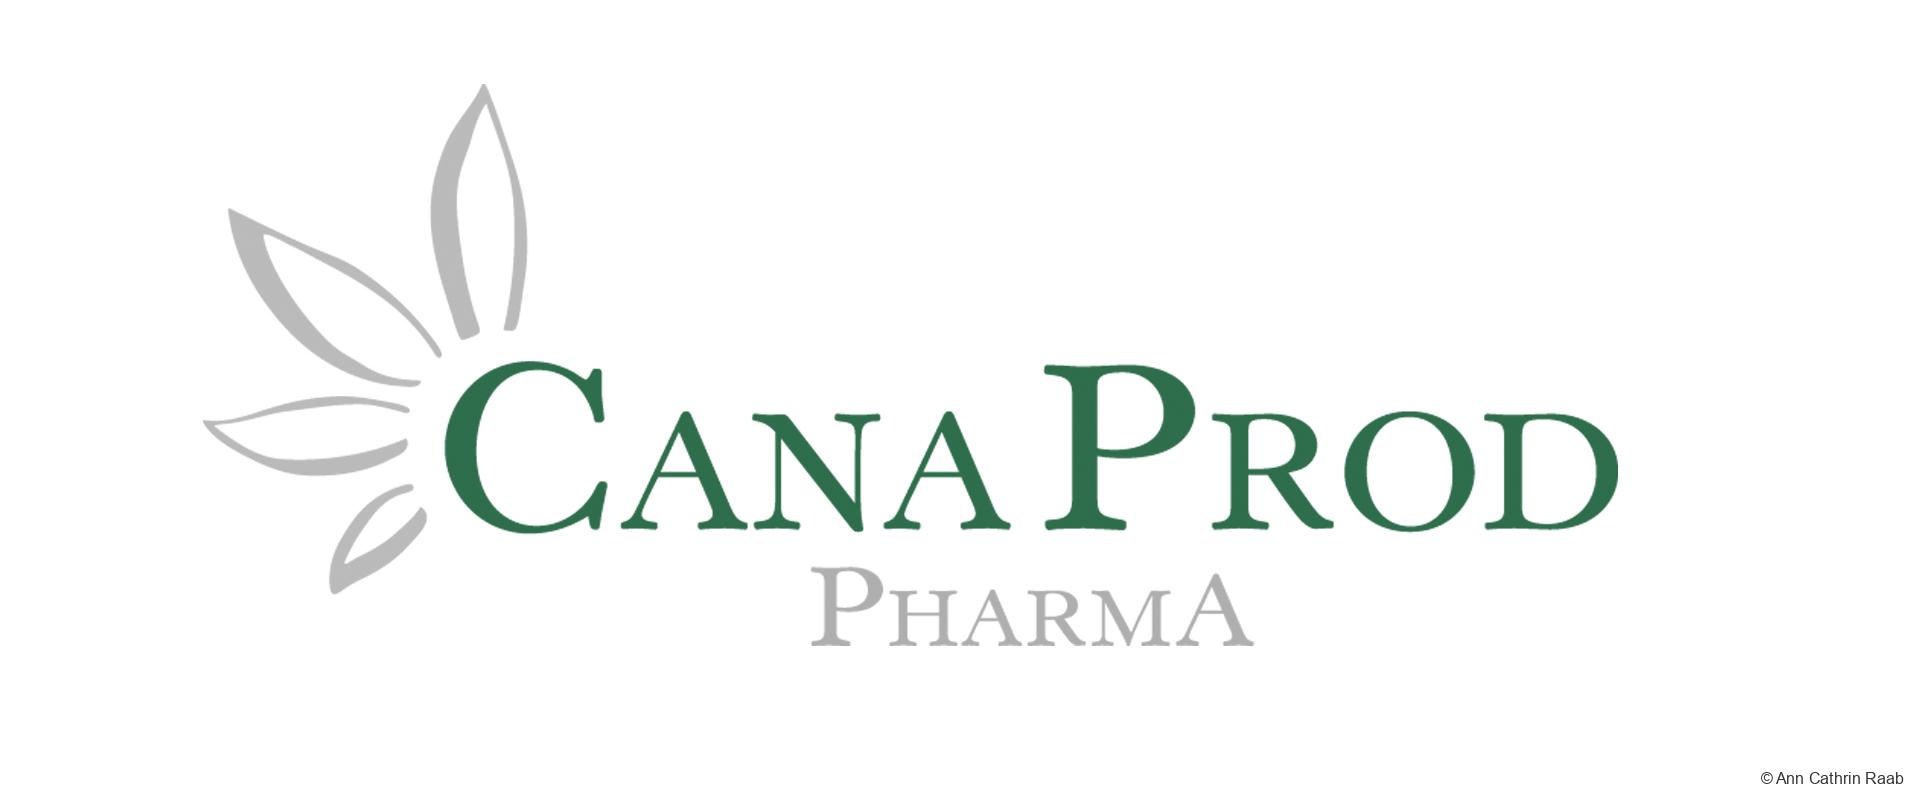 CanaProd Pharma